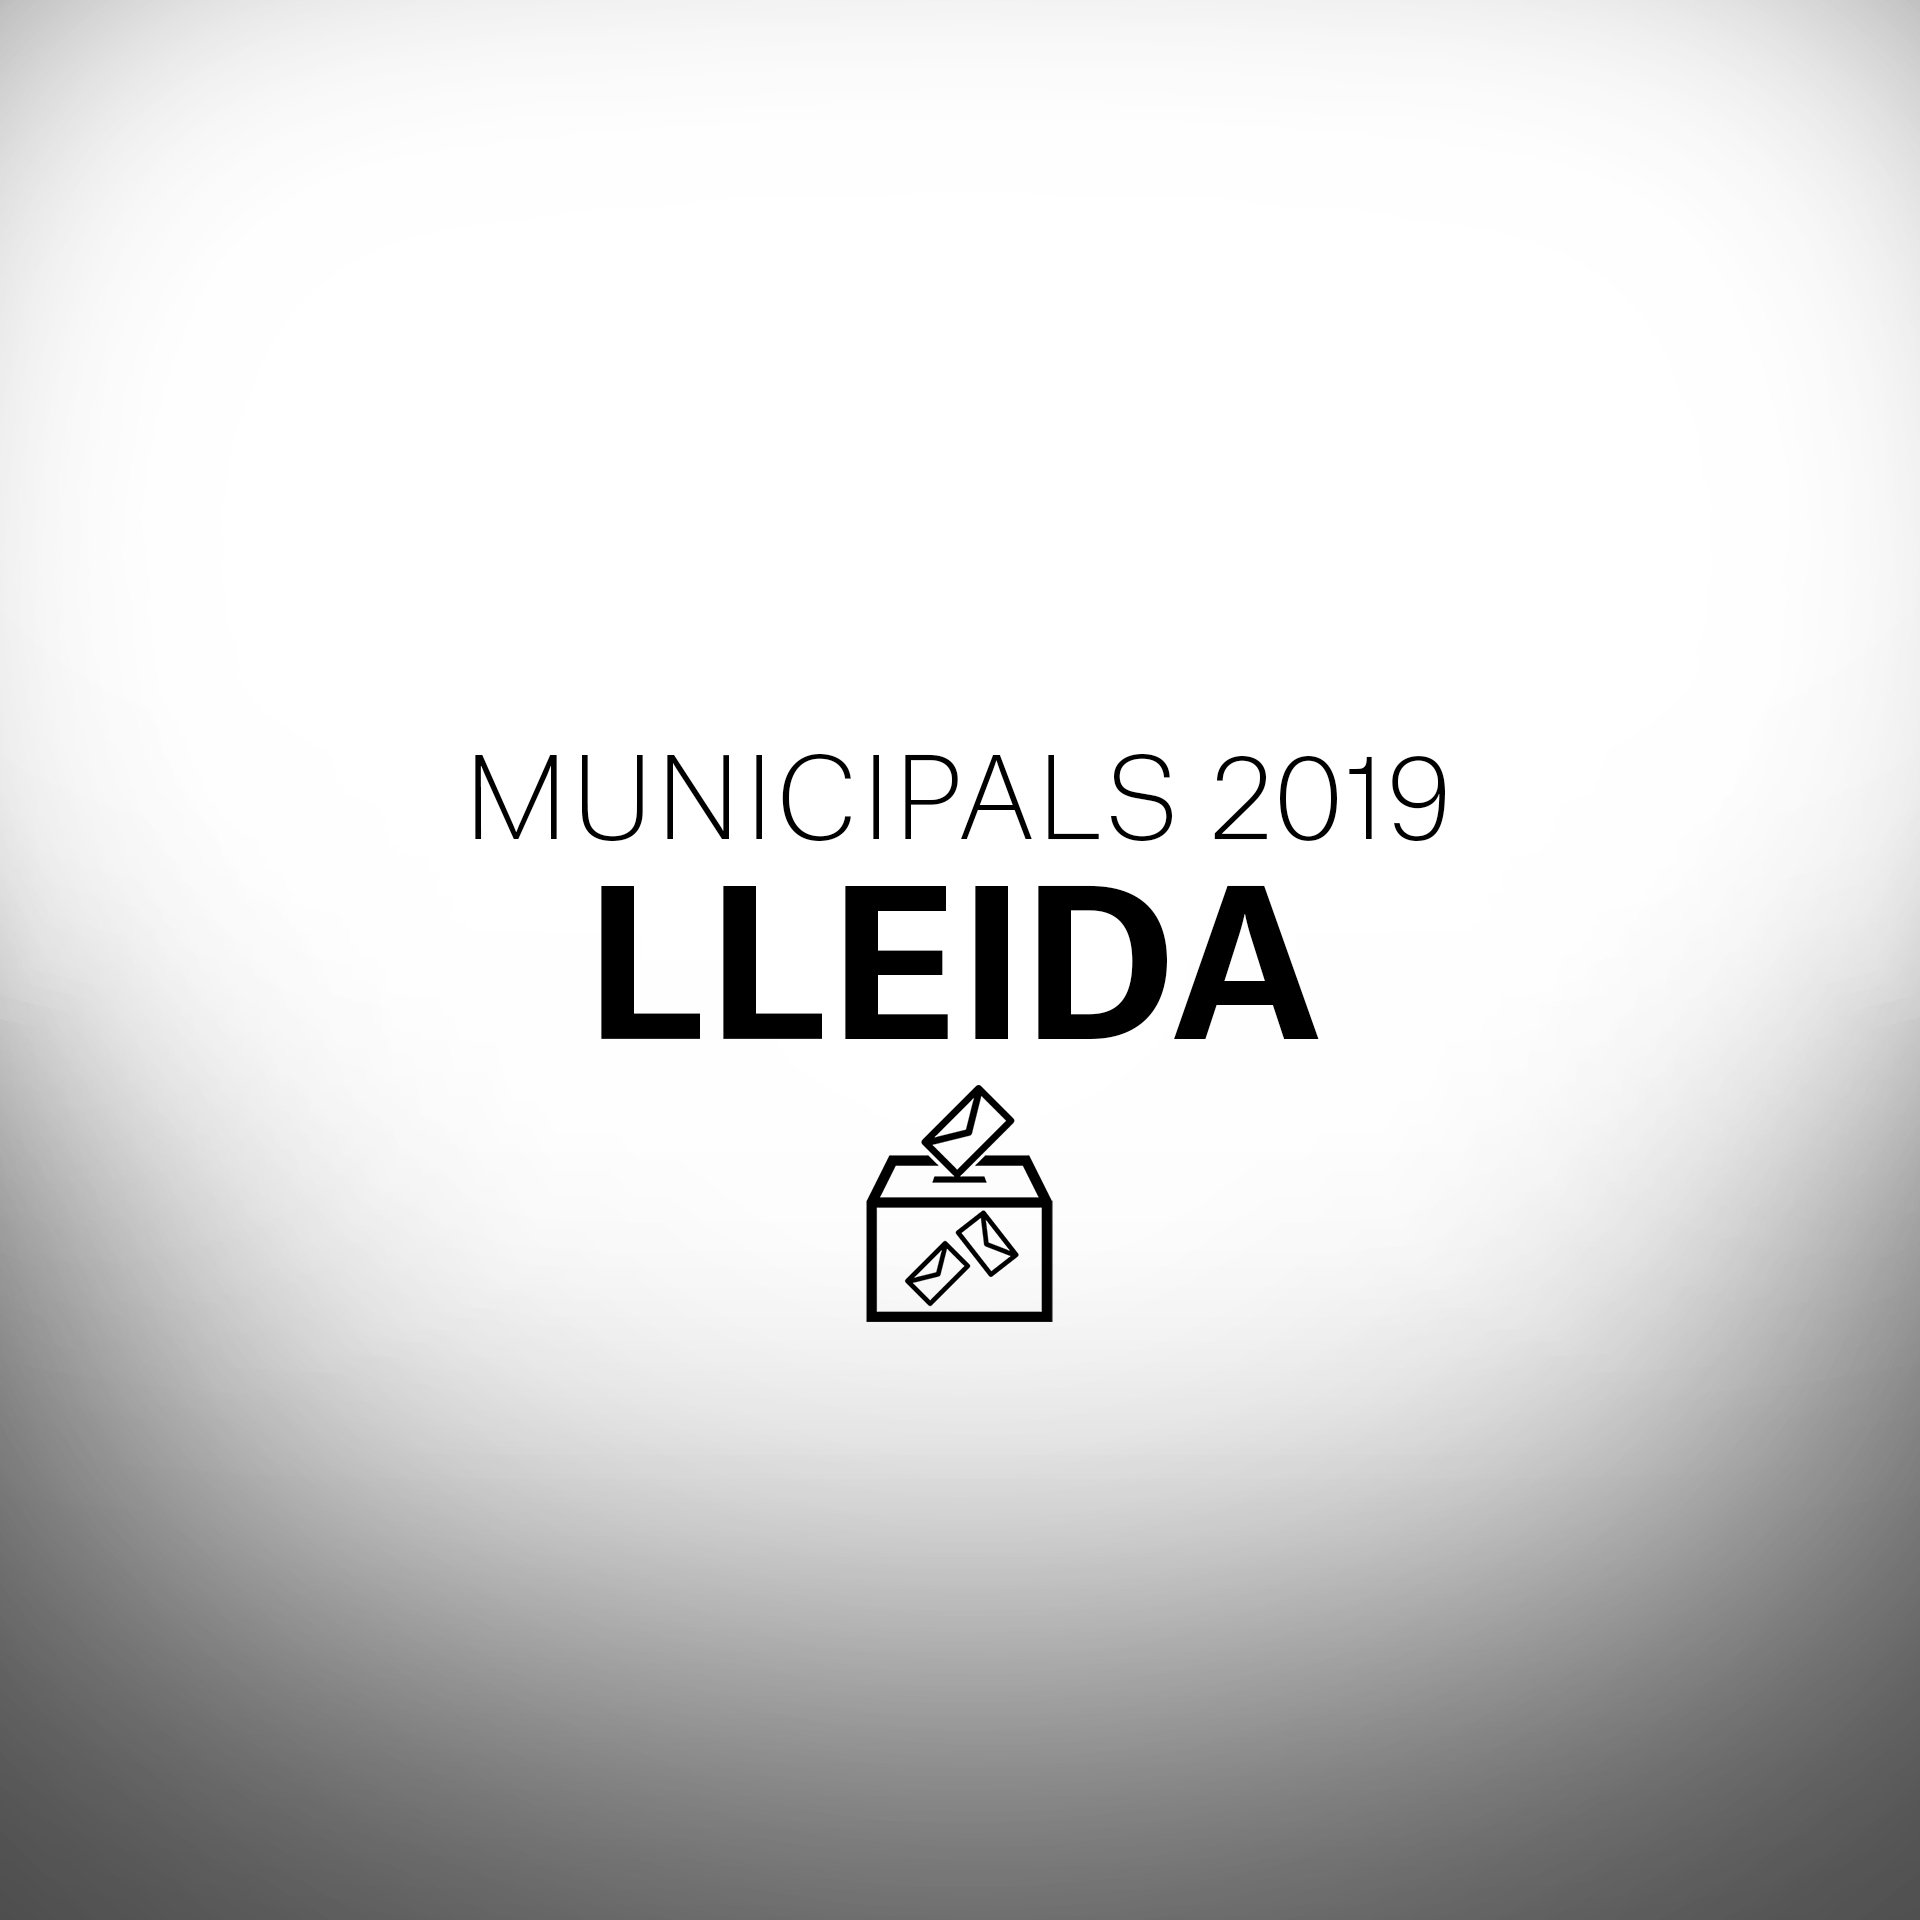 Què passarà a les eleccions municipals a Lleida?